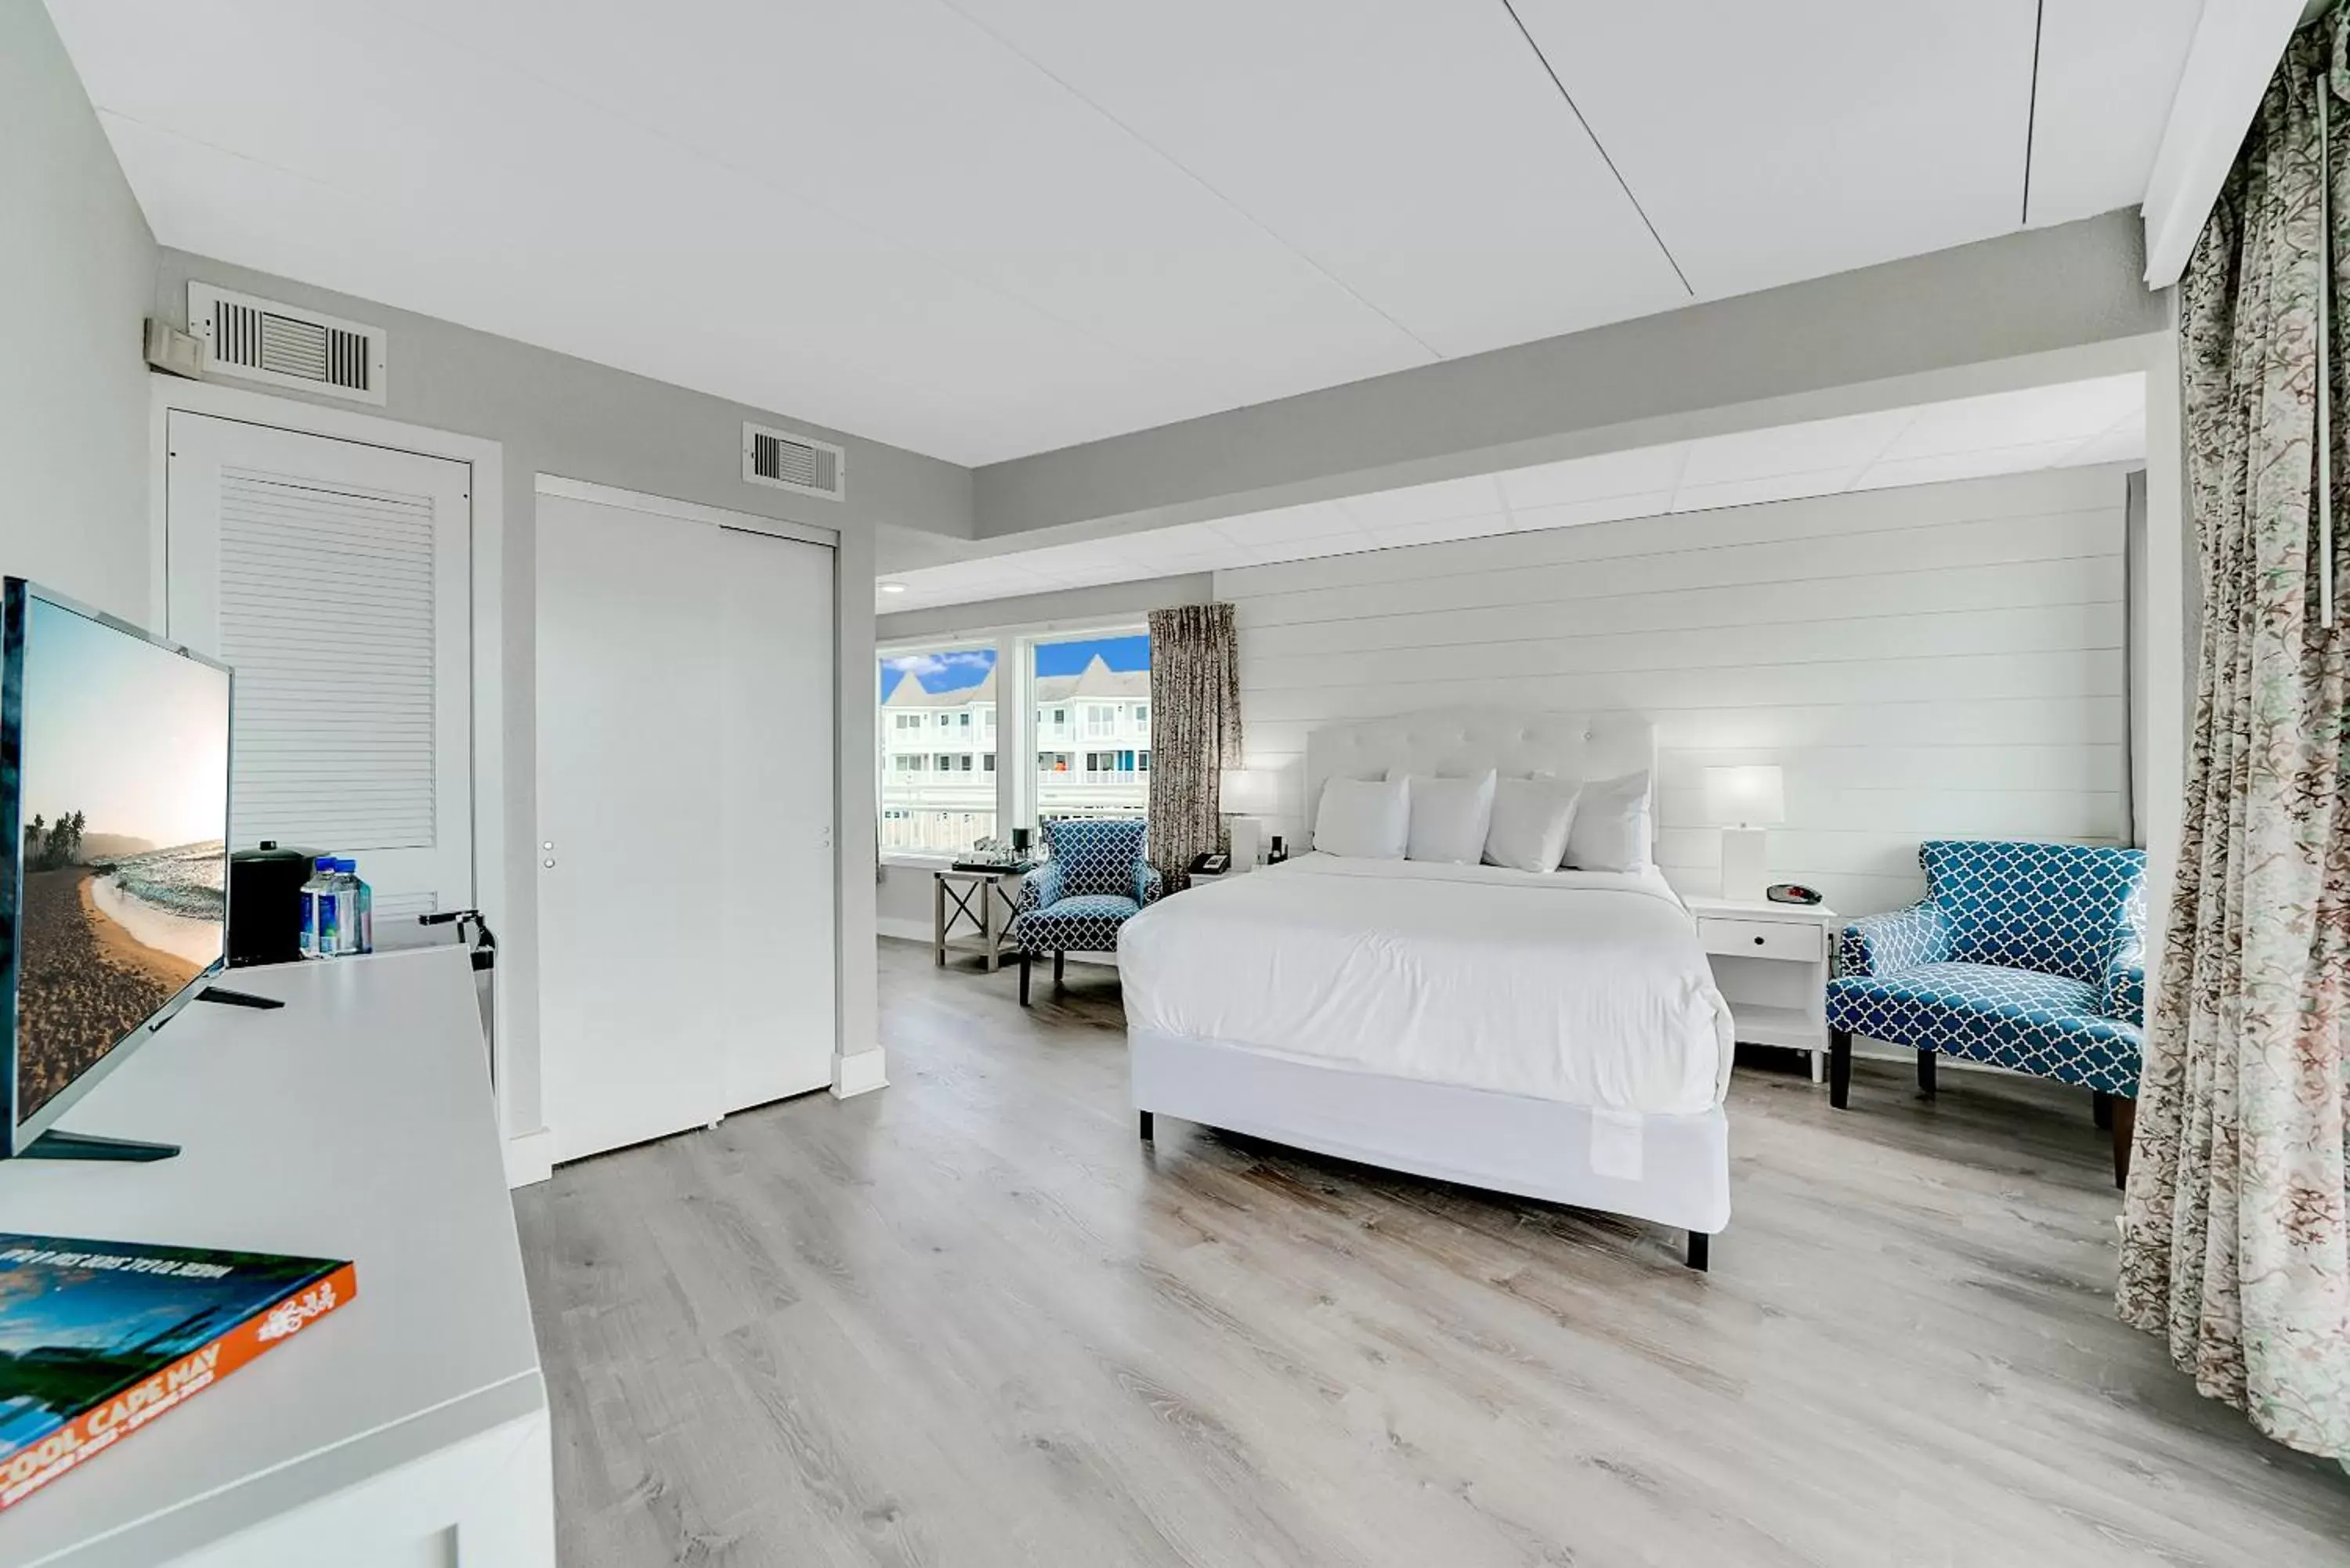 Bedroom in Montreal Beach Resort